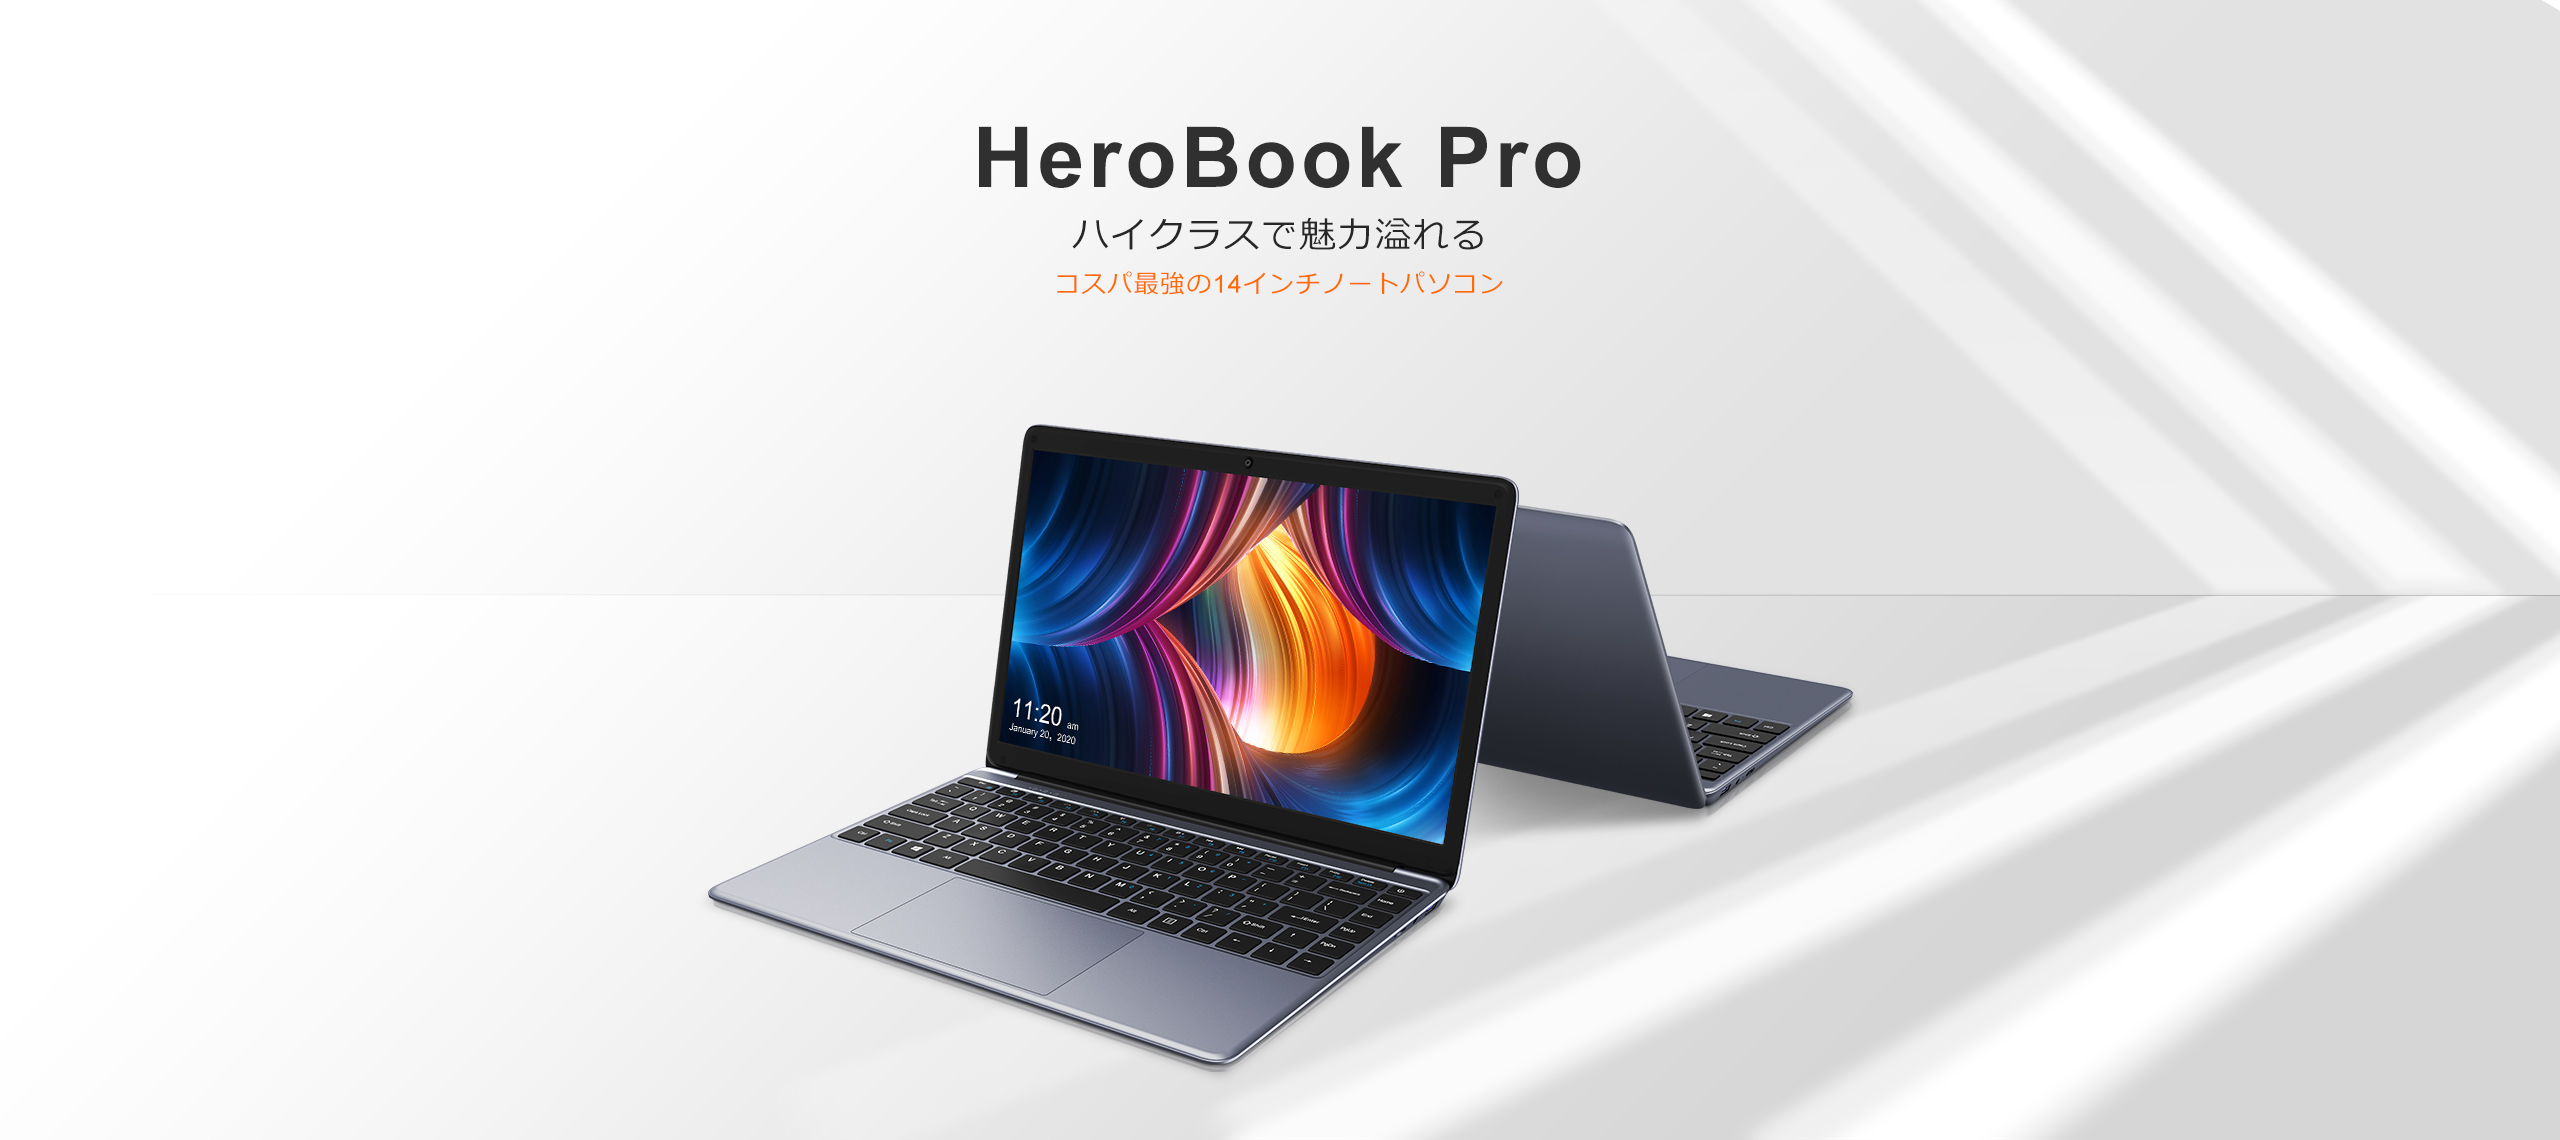 8GB容量Chuwi HeroBook Pro 8GB 256GB MS Office付